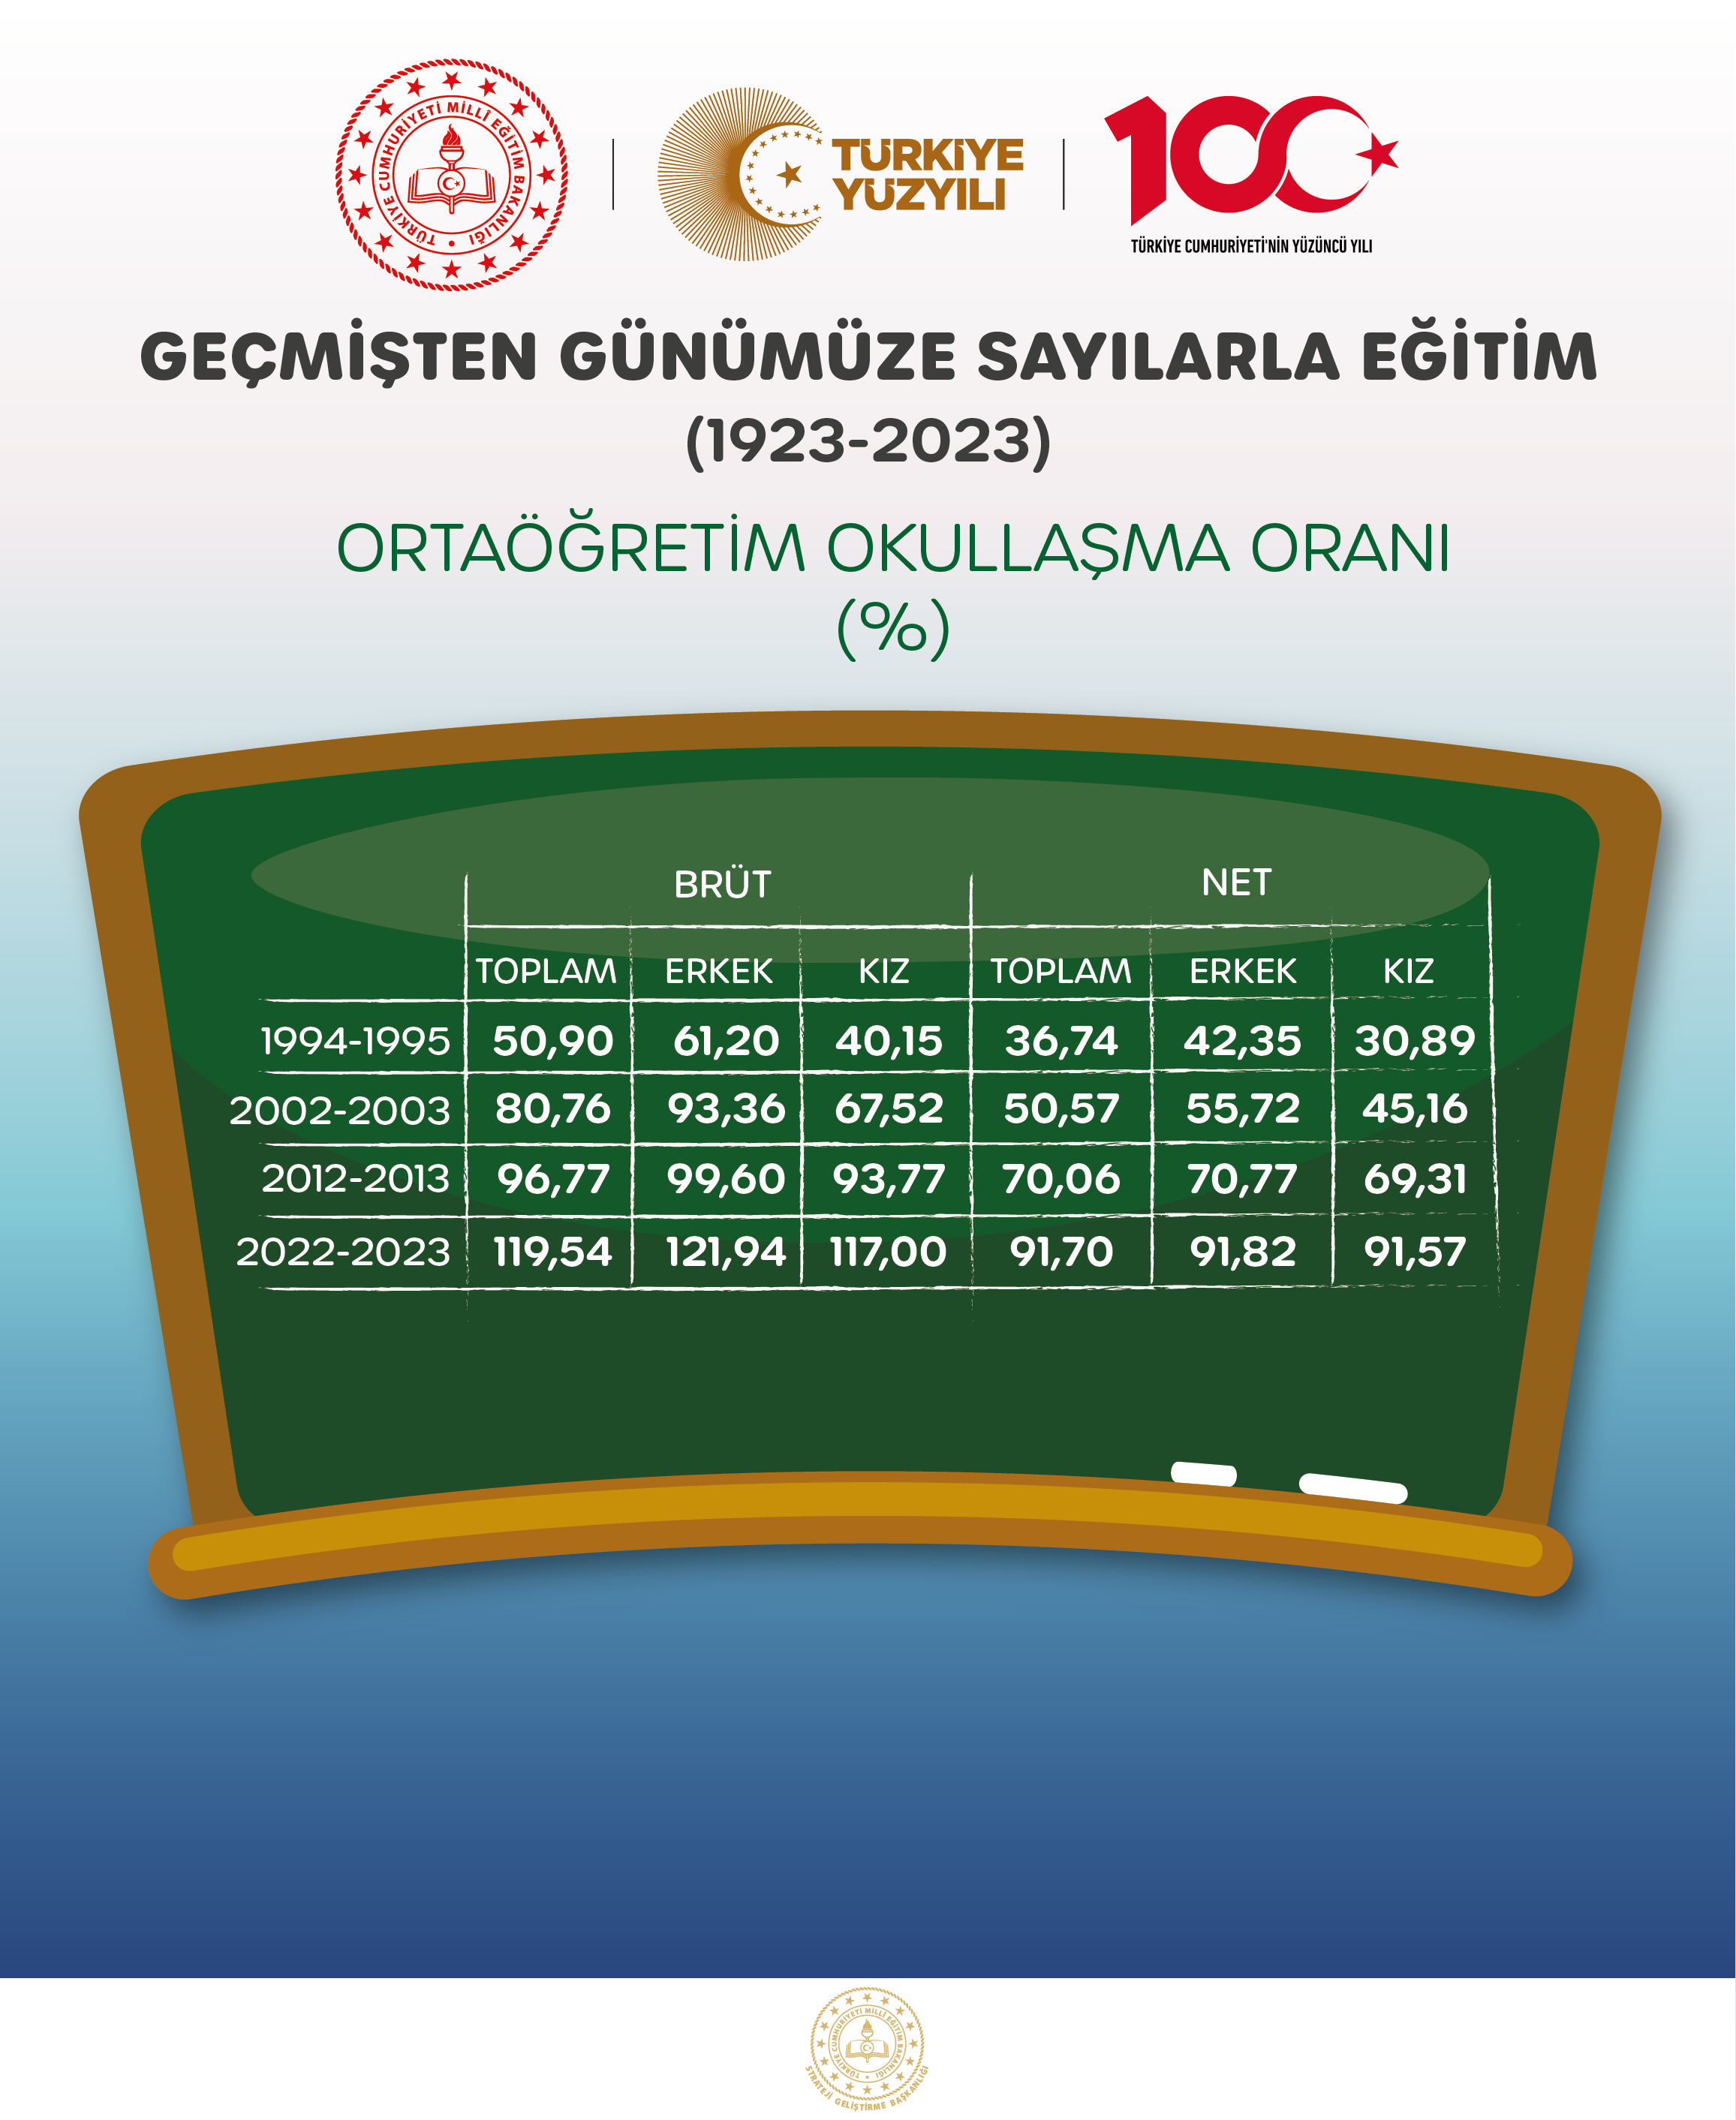 ORTAÖĞRETİM OKULLAŞMA ORANI (%)